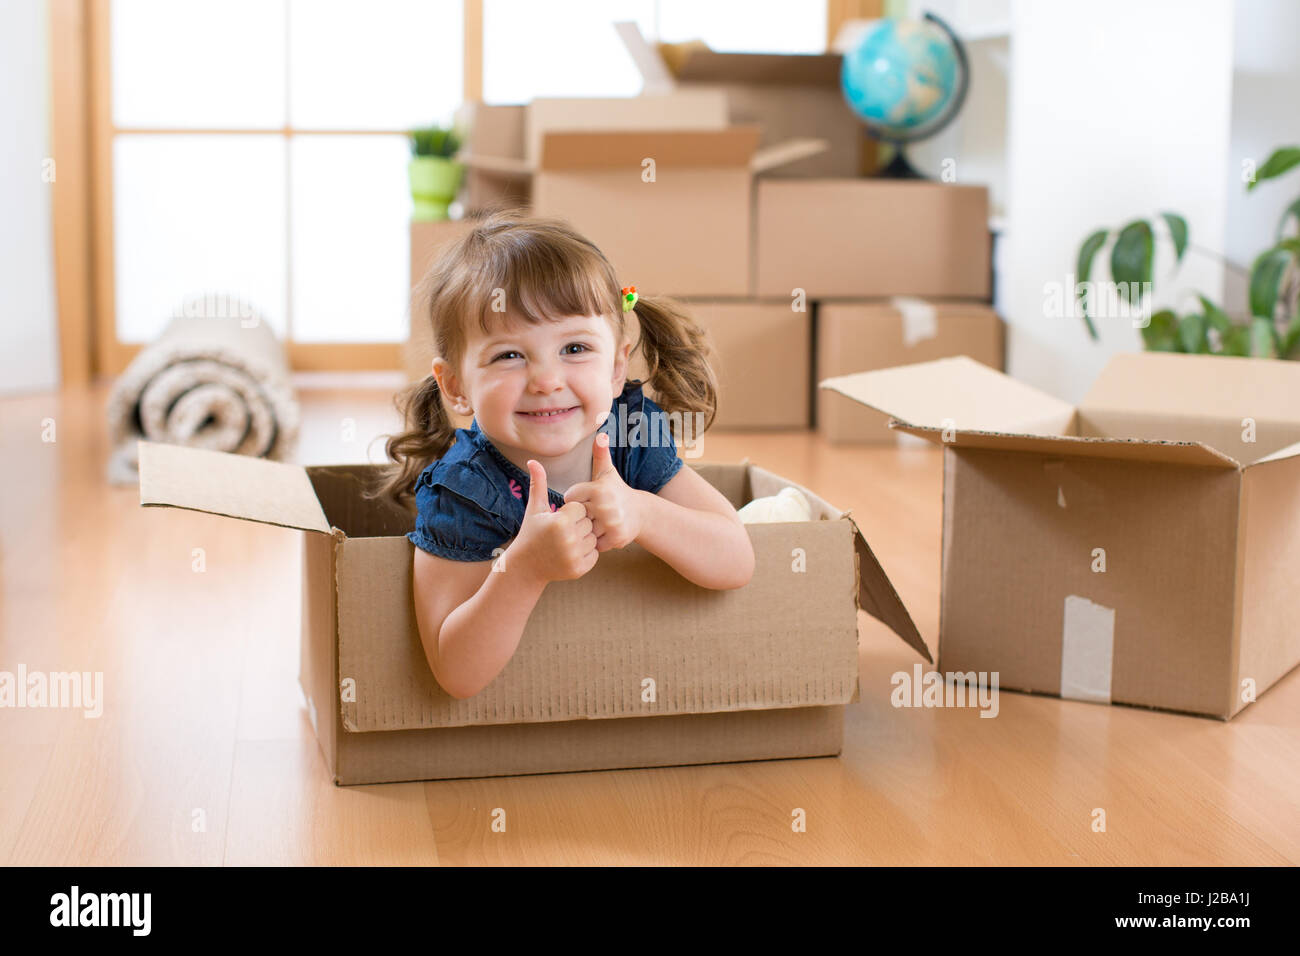 Umzug in neue Wohnung. Glückliches Kind im Karton. Stockfoto